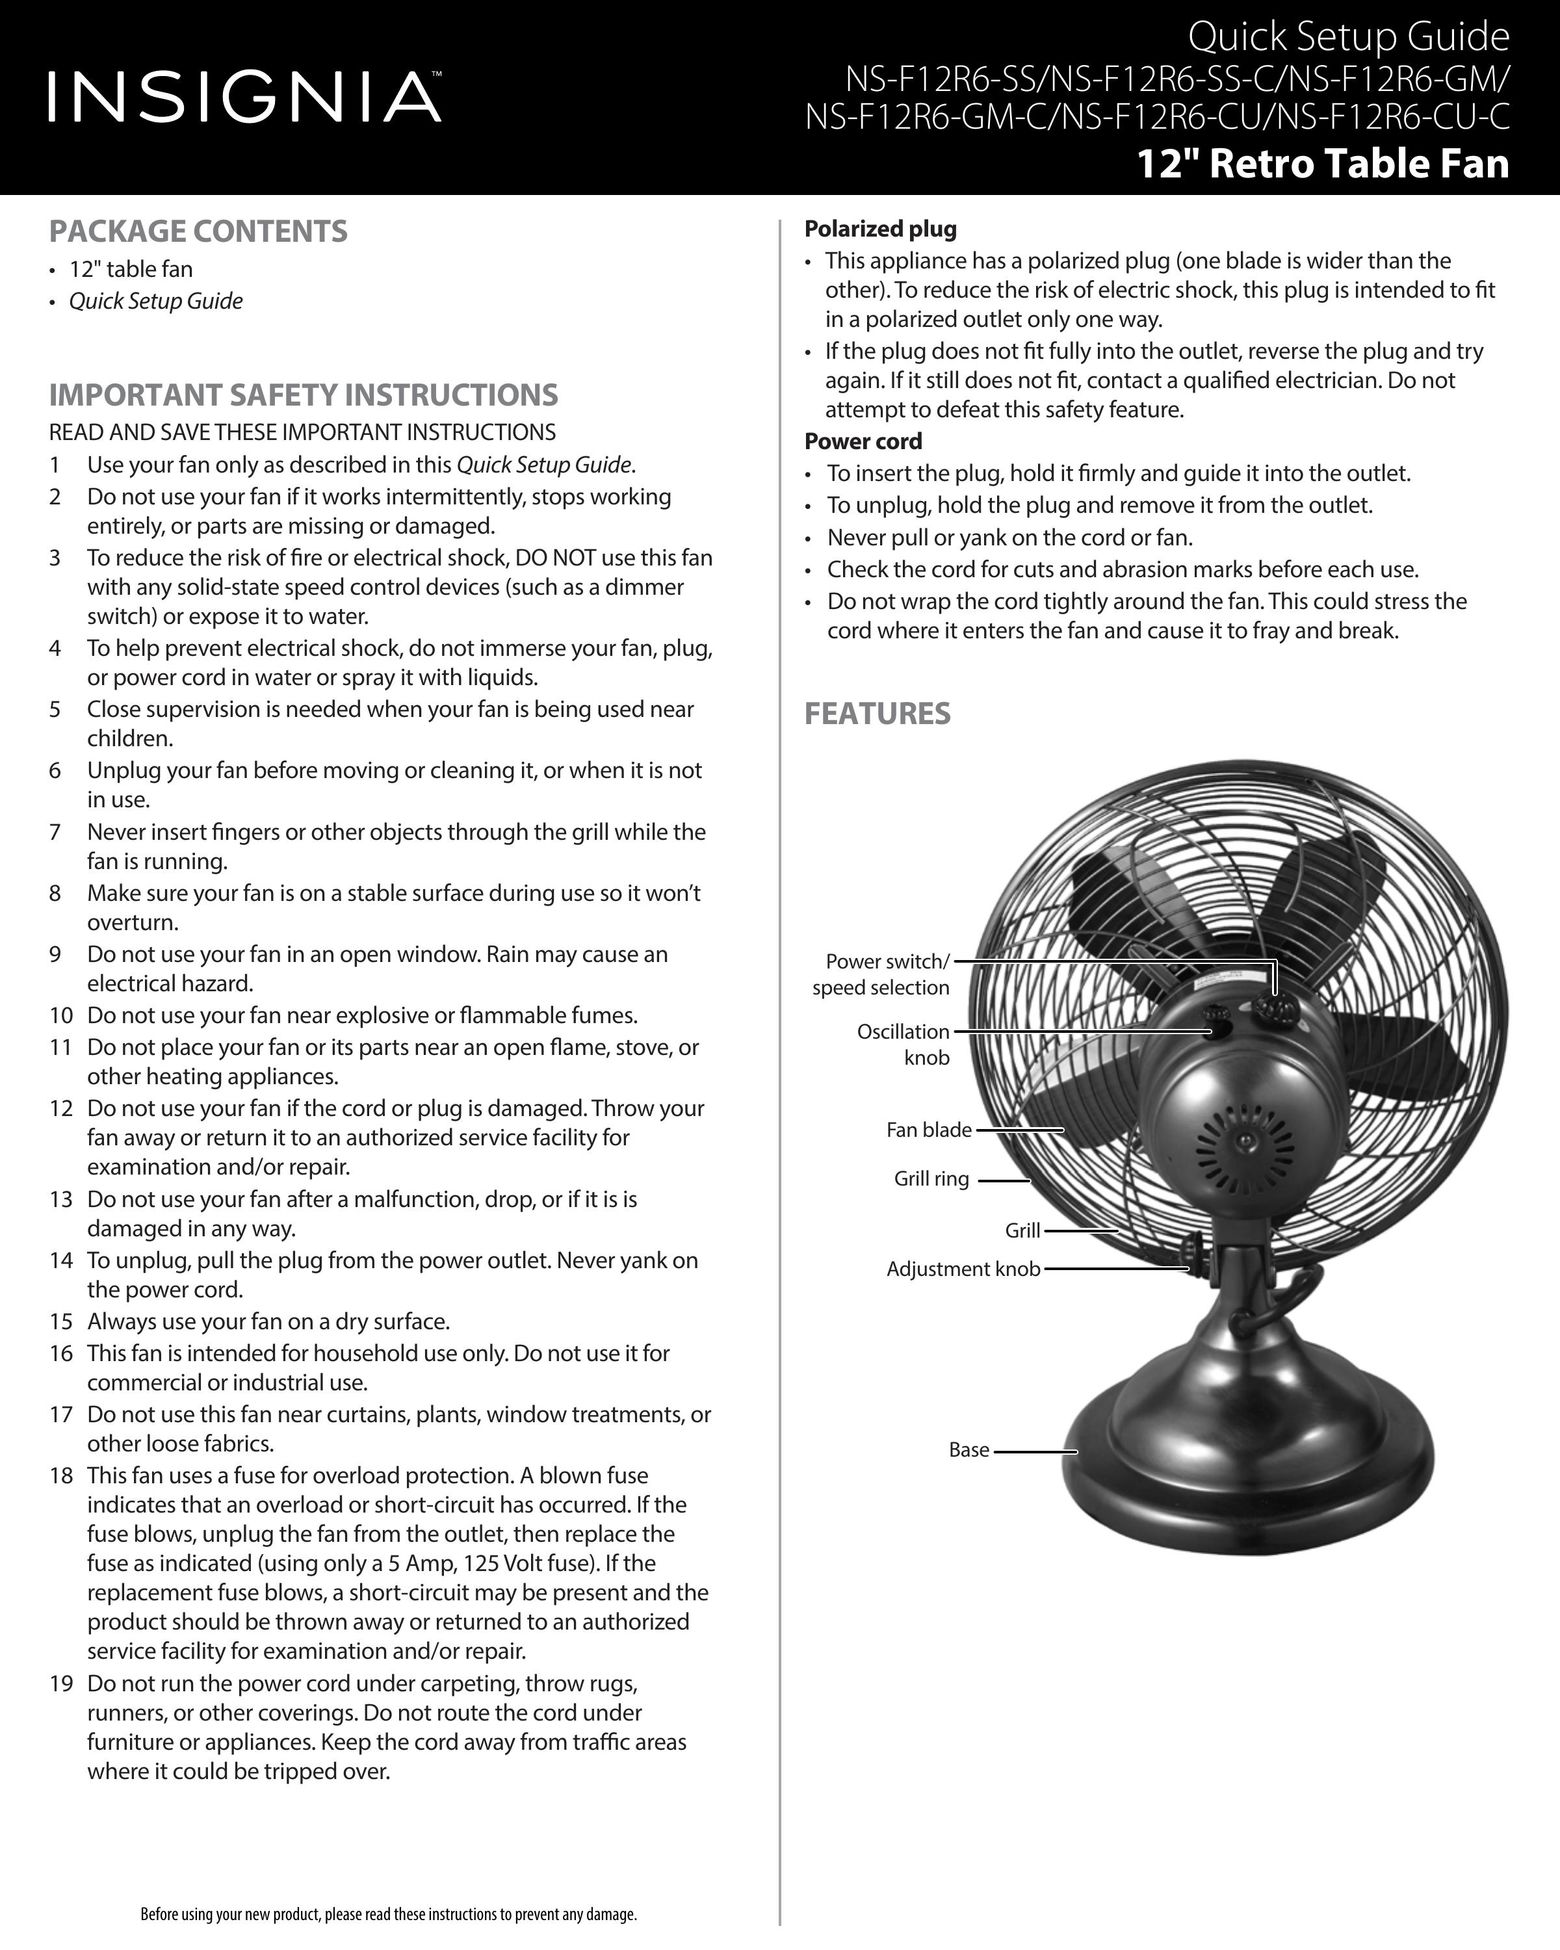 Insignia NS-F12R6-CU-C Fan User Manual